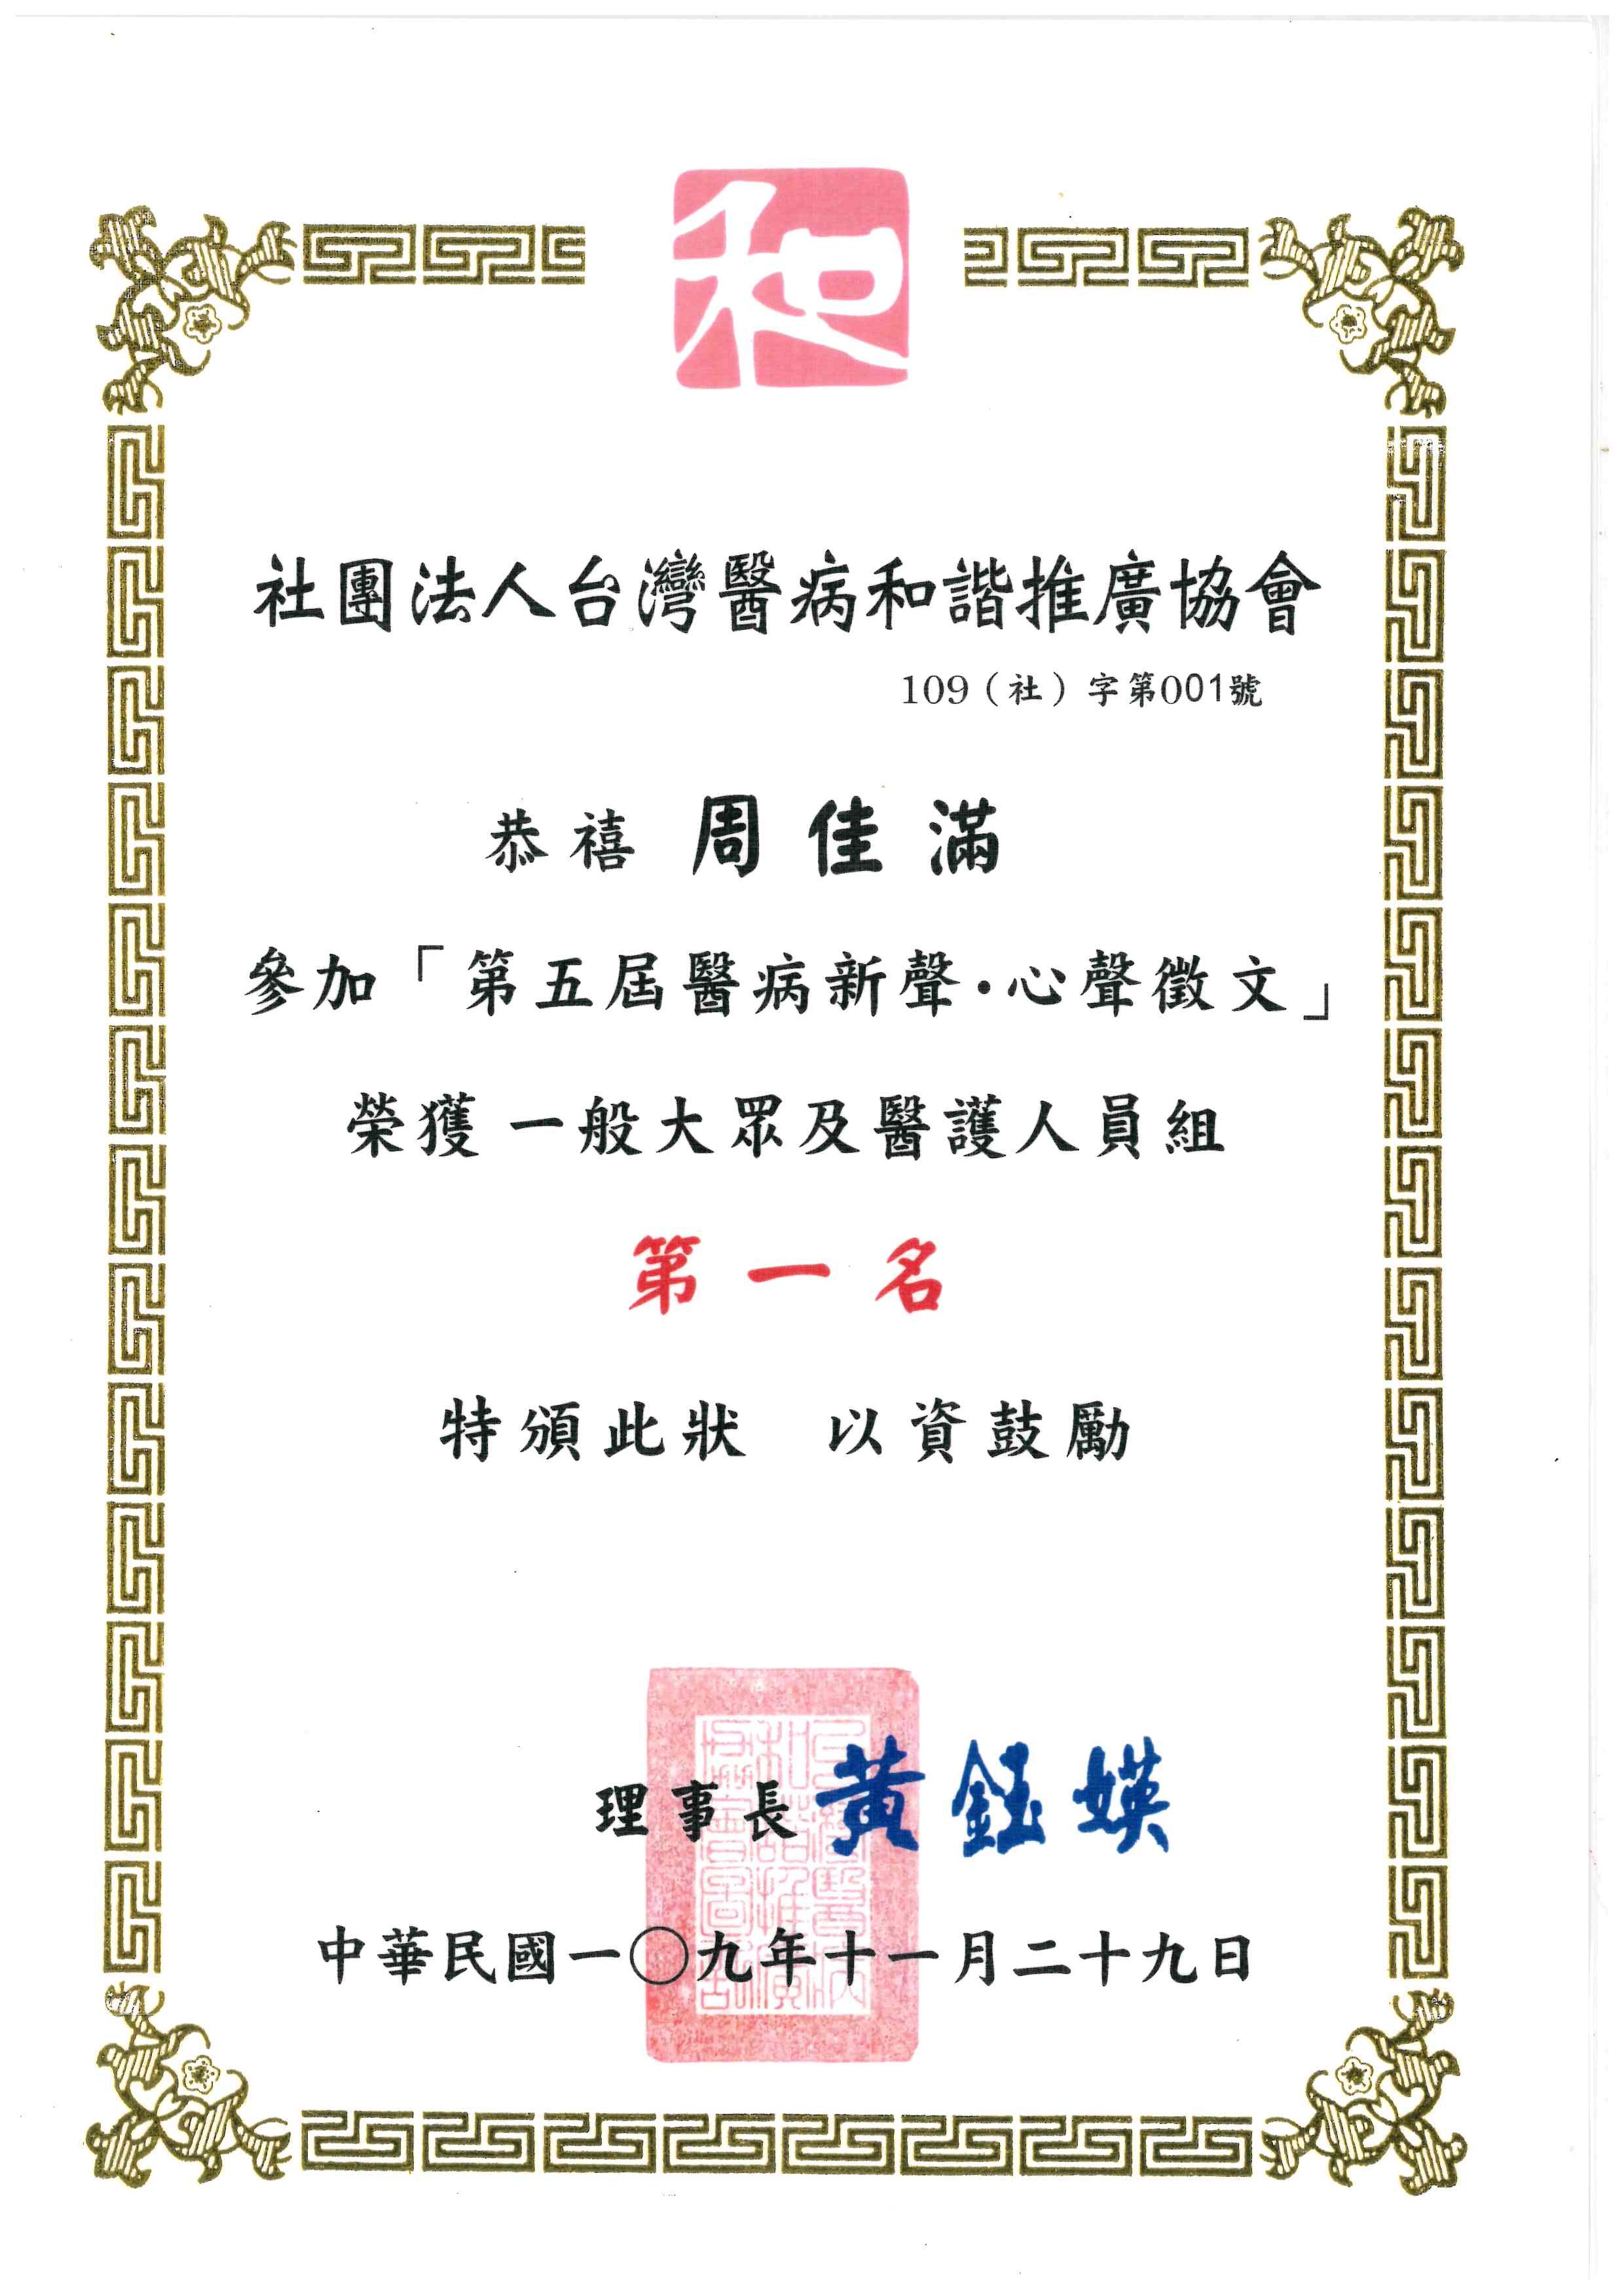 恭賀周佳滿主任榮獲台灣醫病和諧推廣協會第五屆「醫病新聲‧心聲徵文」第一名